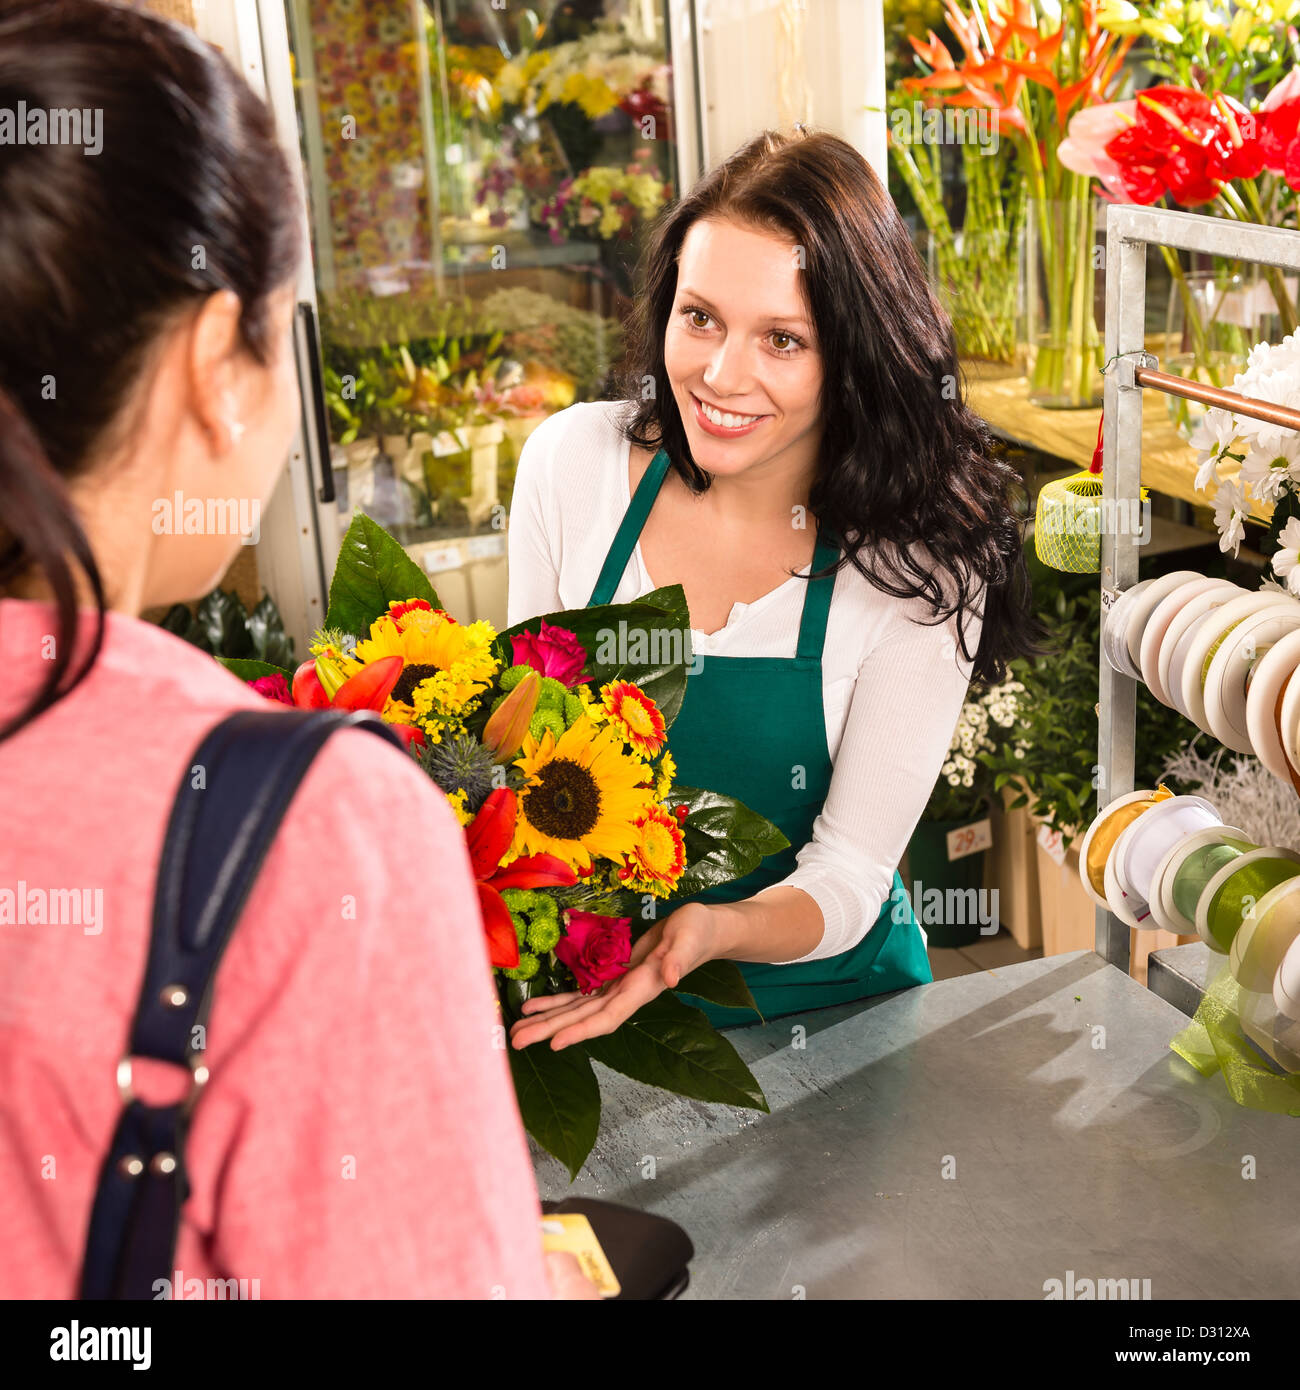 Fleuriste bouquet coloré femme vendant customer flower shop store Banque D'Images